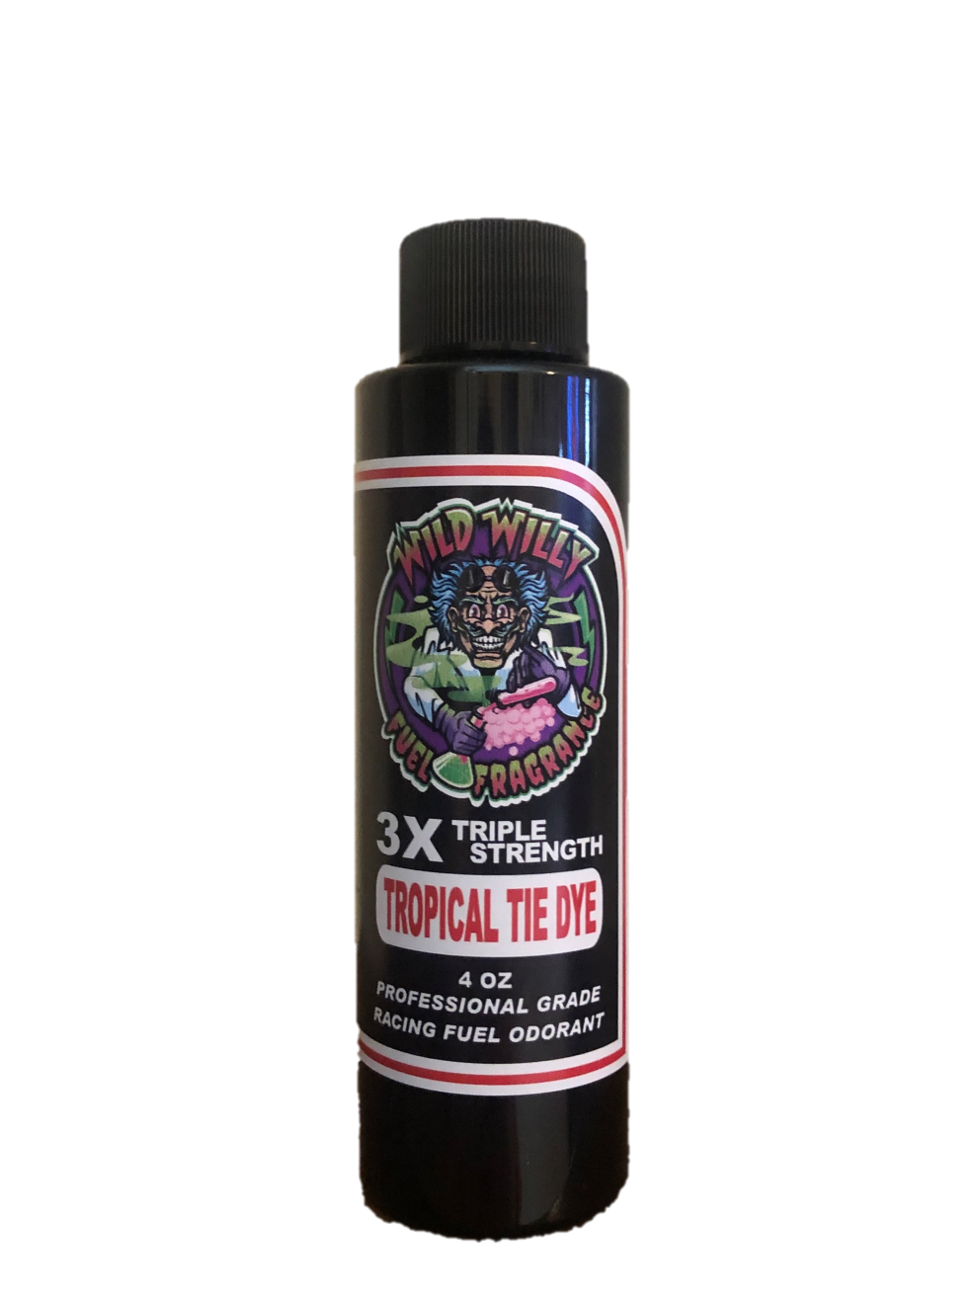 Tropical Tie Dye - Wild Willy Fuel Fragrance - 3X Triple Strength!